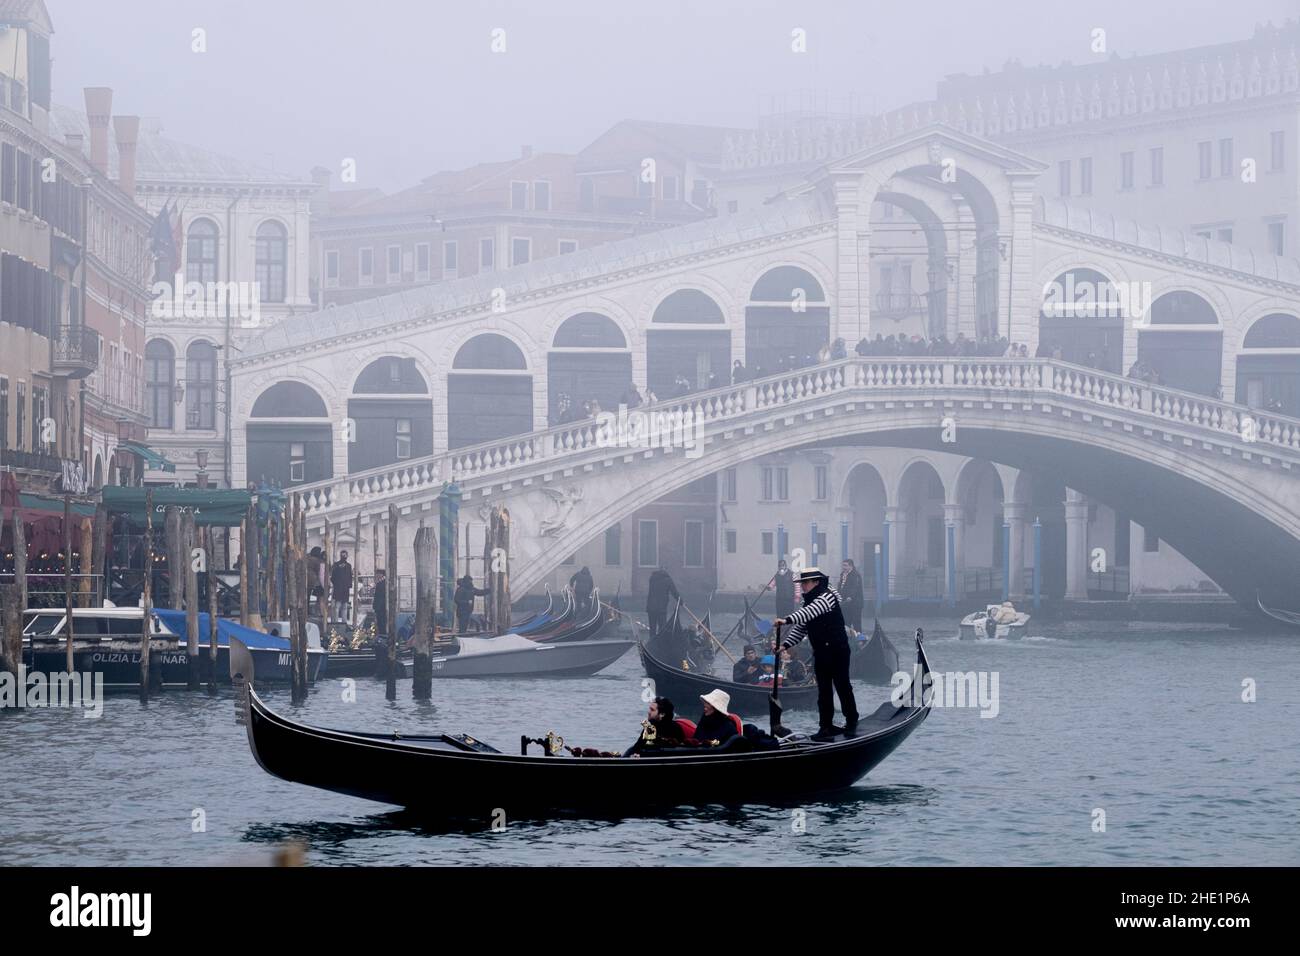 Ein Gondoliere rudern seine Gondel während einer Zeit des Nebels über den Canal Grande. Venedig, Italien, Dezember 30 2021. Stockfoto